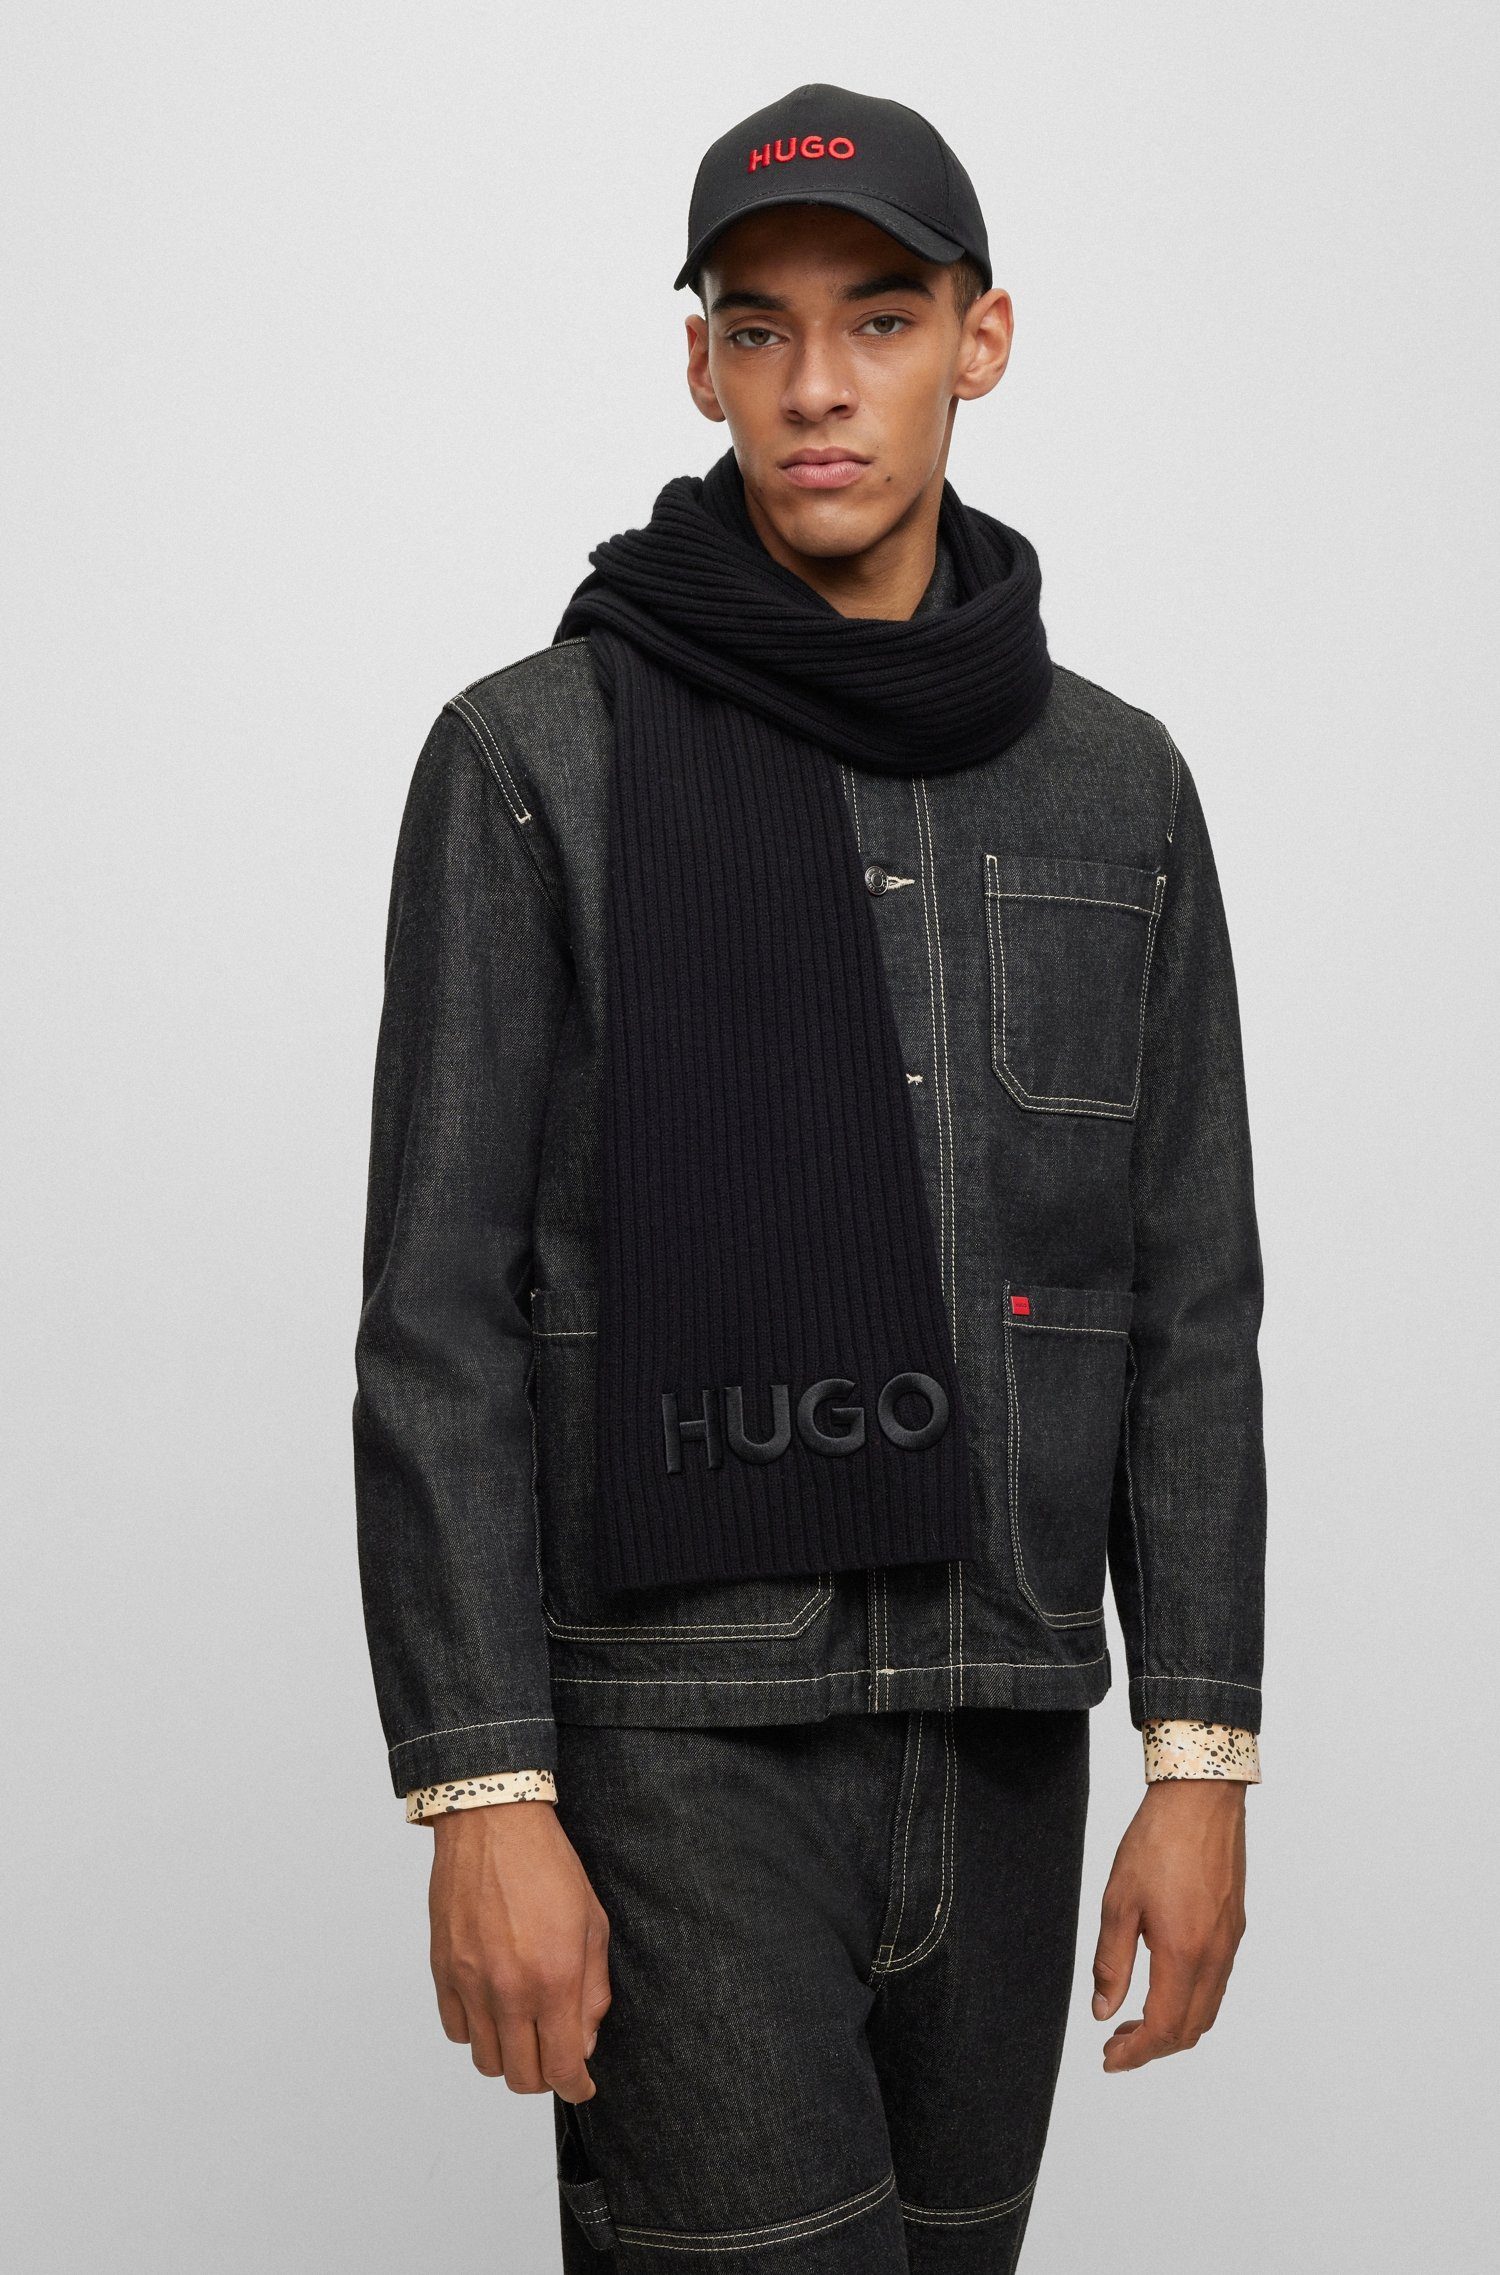 HUGO-Logoschriftzug HUGO Black mit Schal Zunio-1,